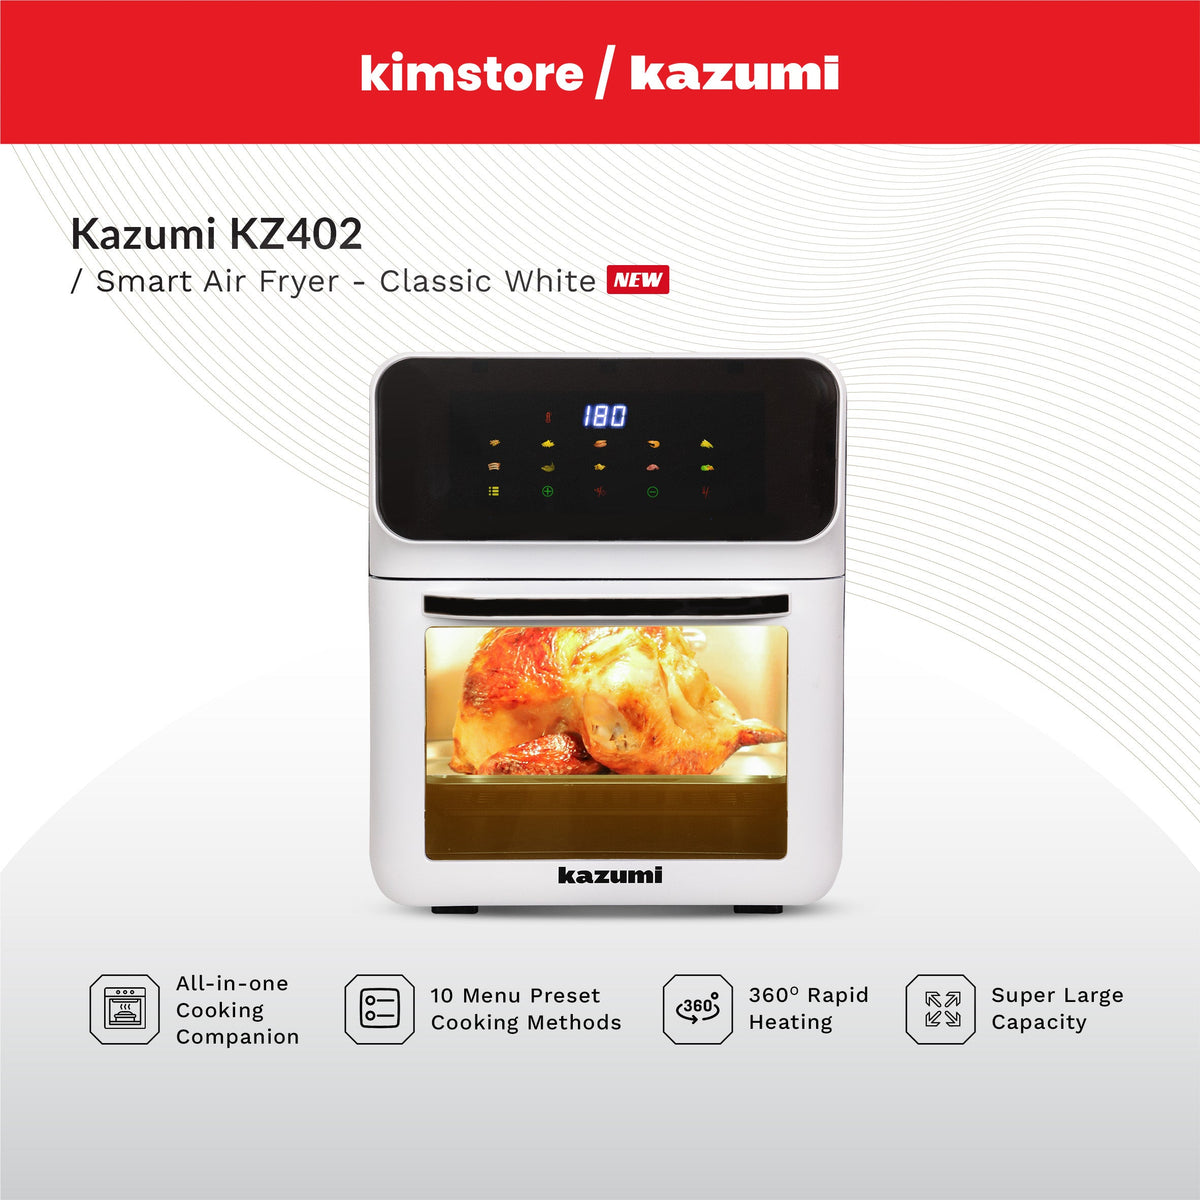 Kazumi KZ-402 Smart Air Fryer Oven